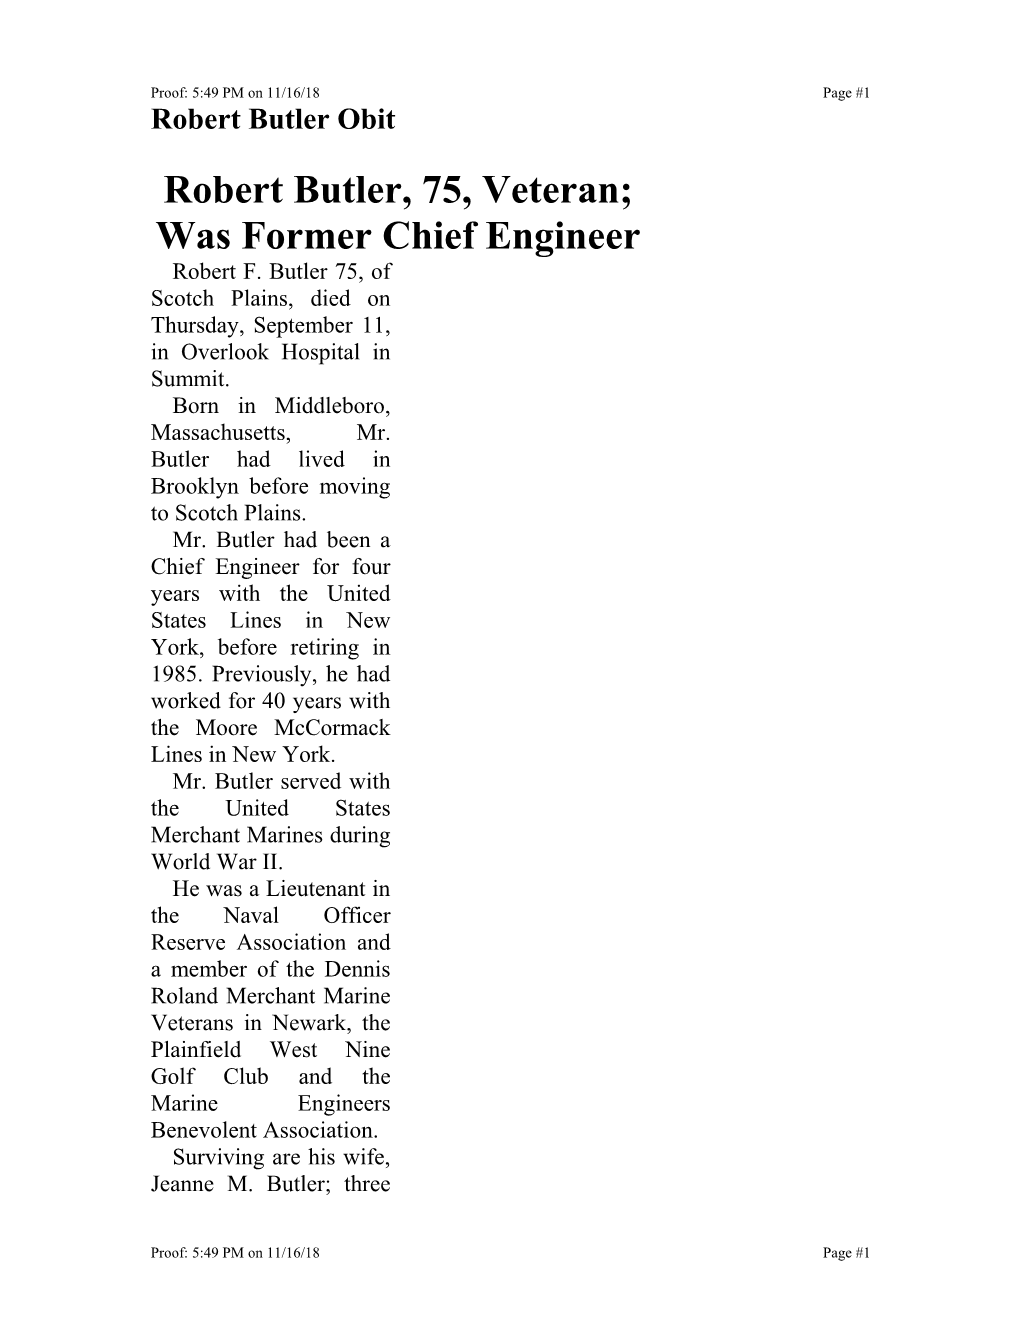 Robert Butler, 75, Cl-Fief Ship Engineer